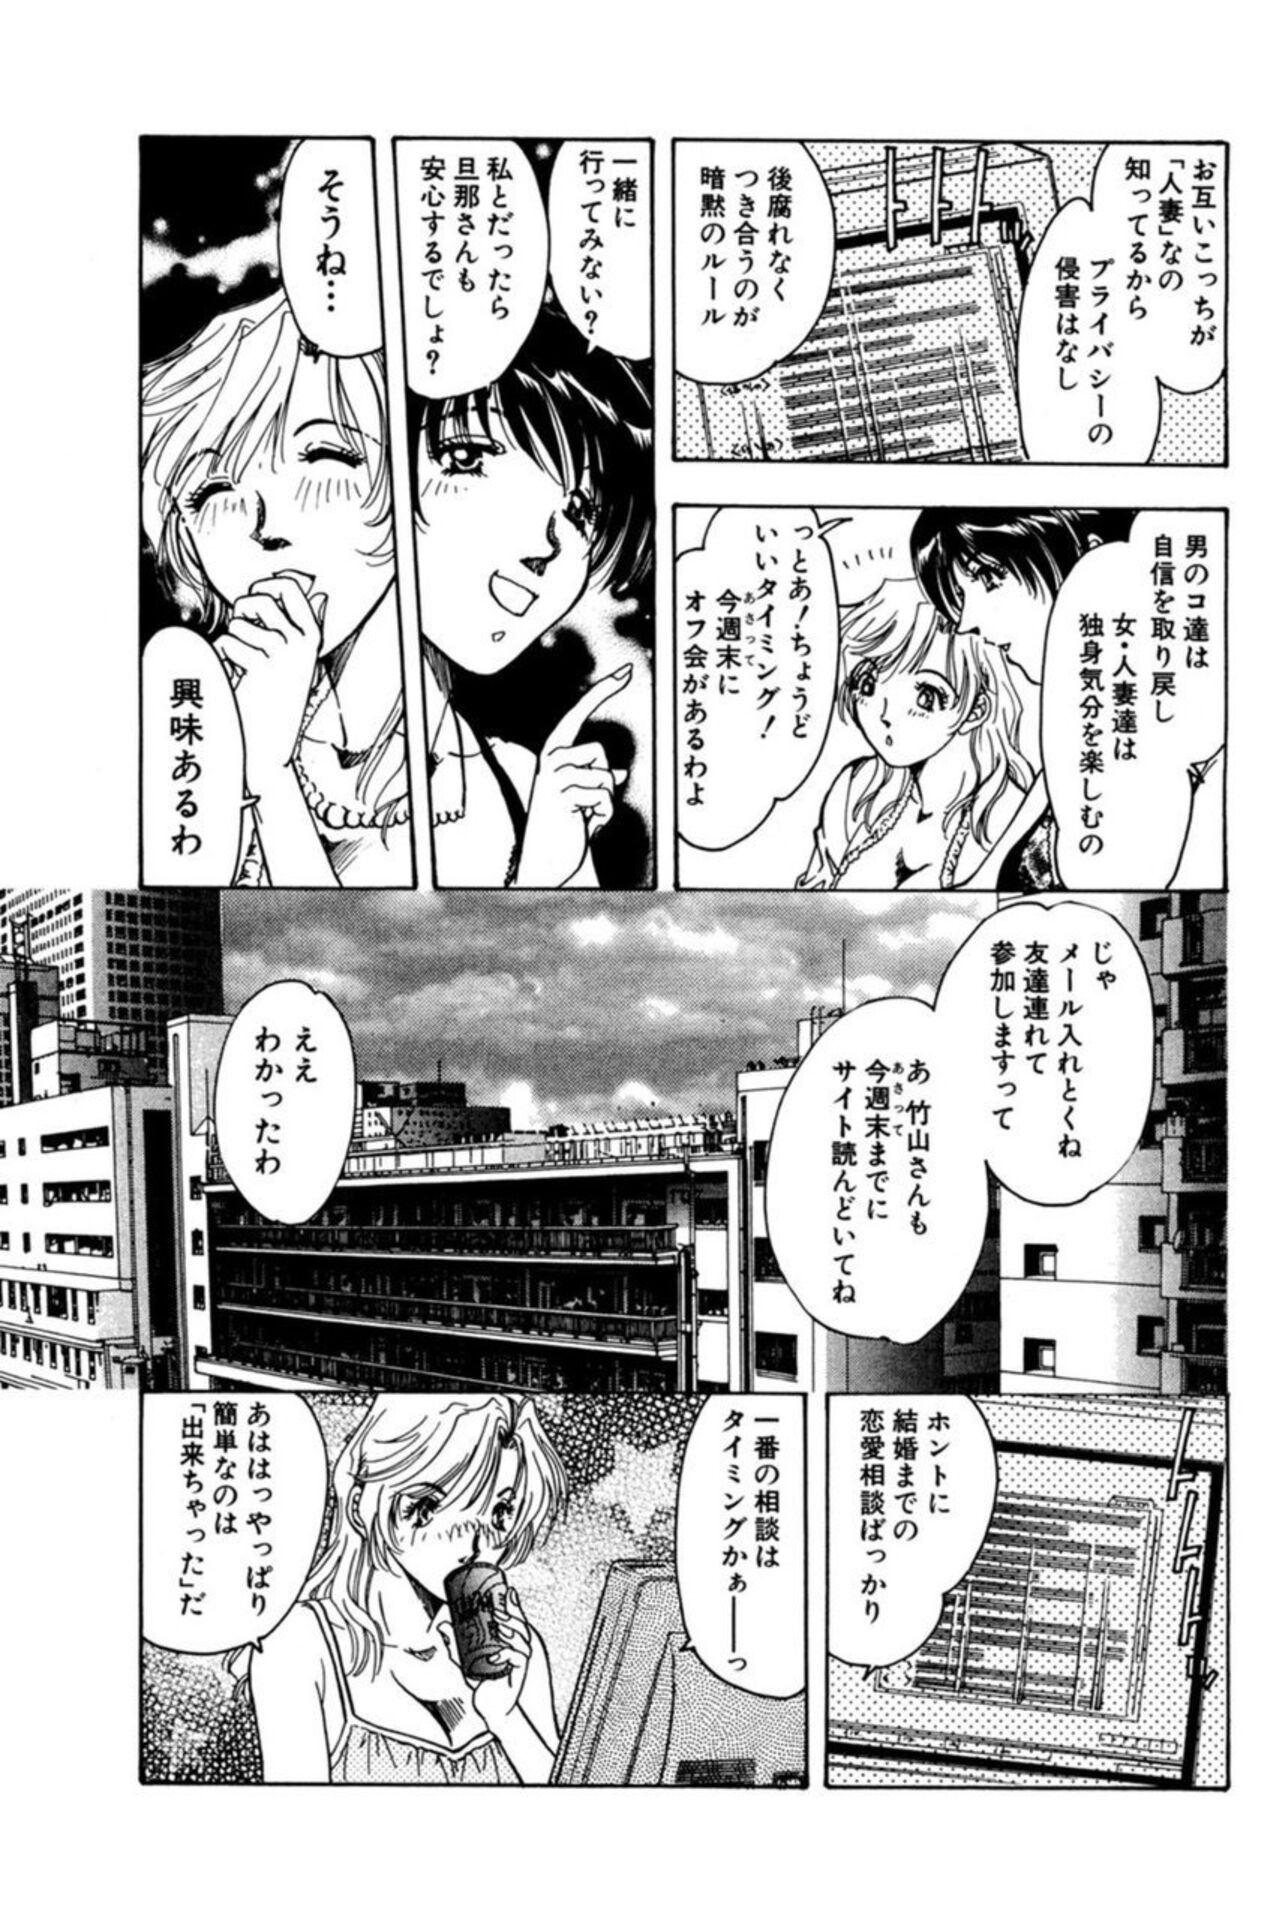 Teenager Nu meru Hitodzuma wa Aratana Shigeki o Sagashite Motomeru 1 Gaygroup - Page 11